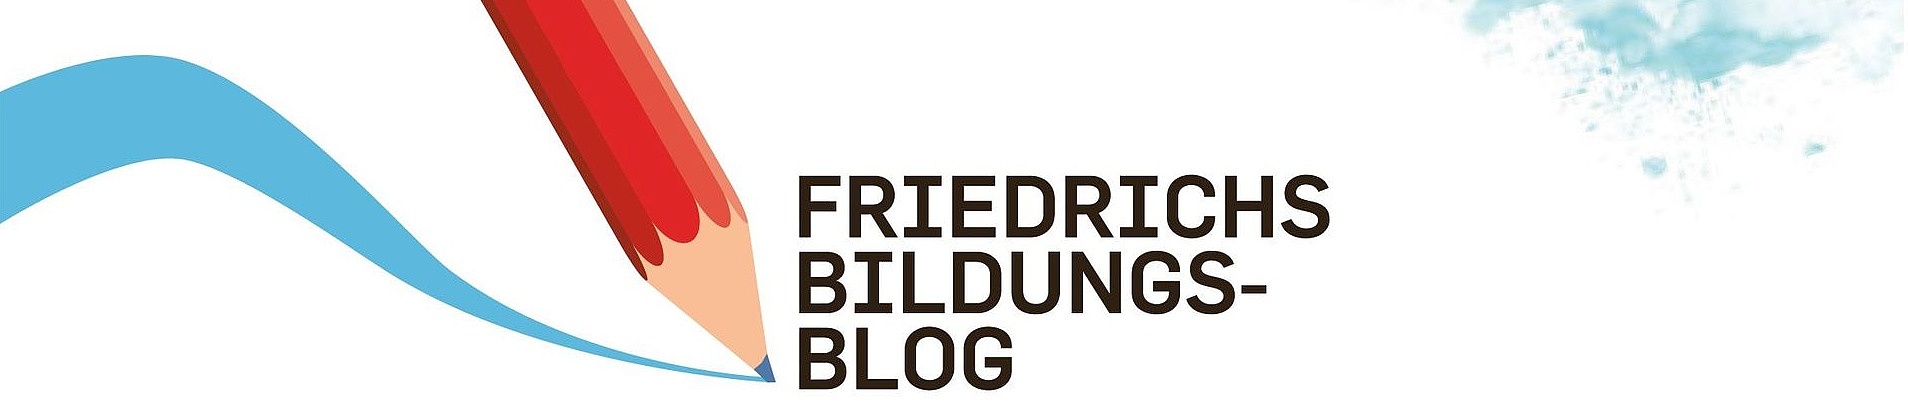 Link Friedrichs Bildungsblog